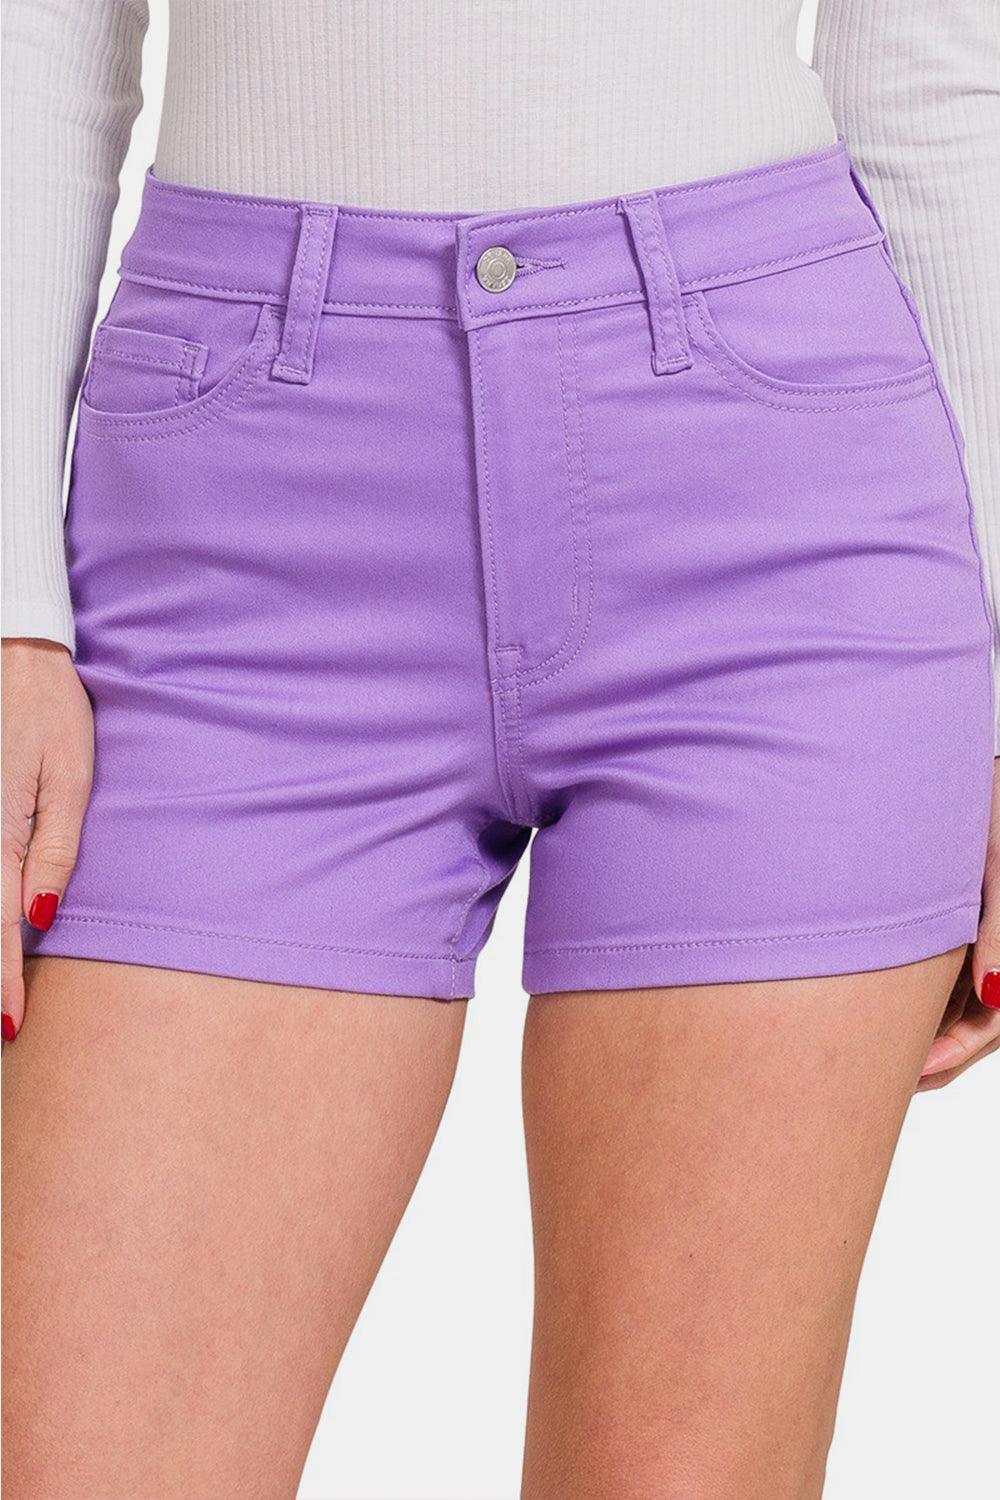 Zenana High Waist Denim Shorts Lavender Shorts